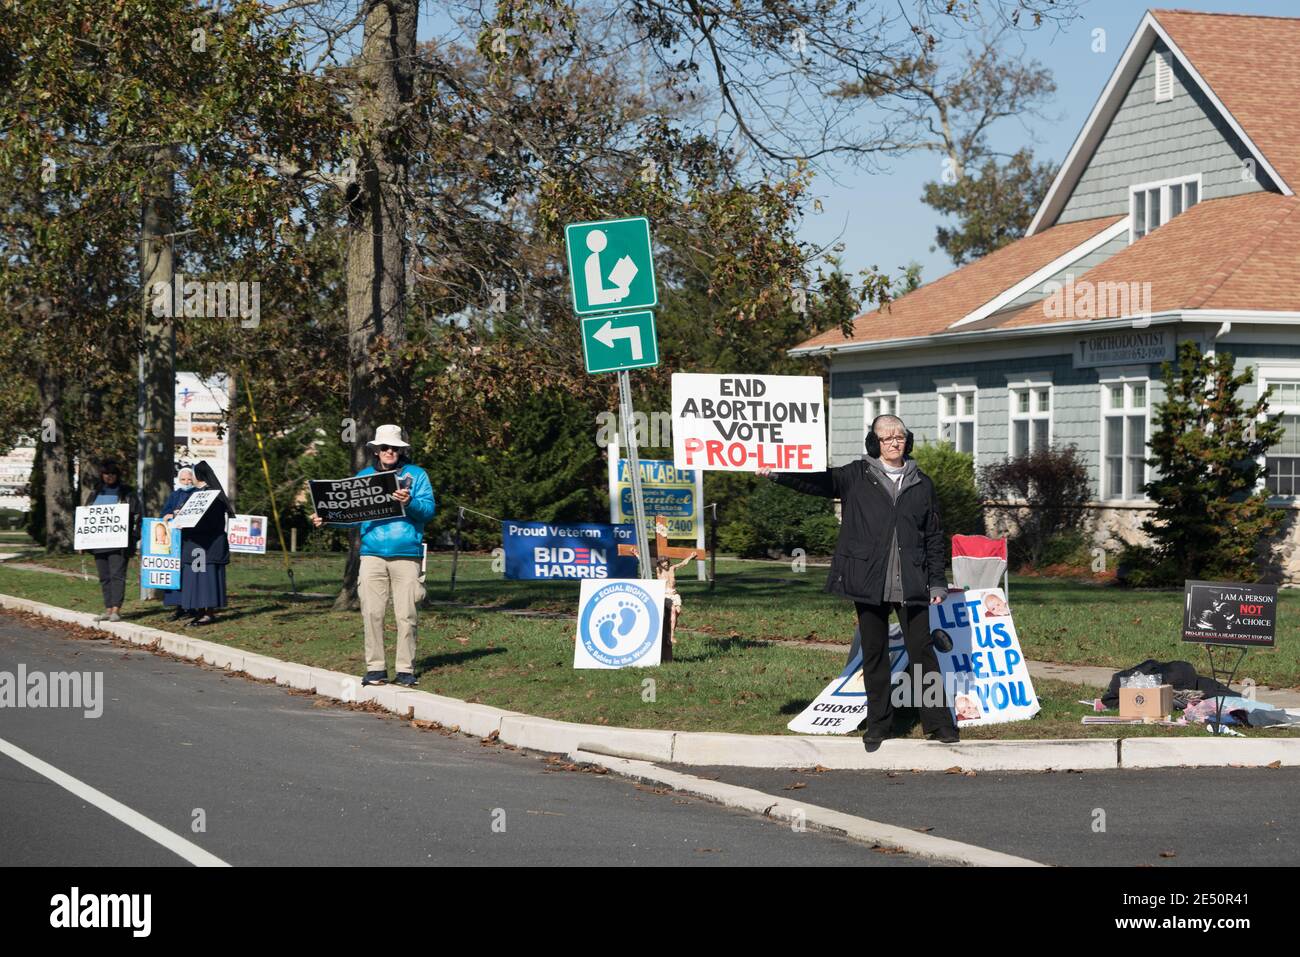 Galloway, NJ - 31 de octubre de 2020: ¡una mujer que sostiene un aborto final! Vote Pro-Life' es parte de un grupo de protesta contra el aborto. Foto de stock